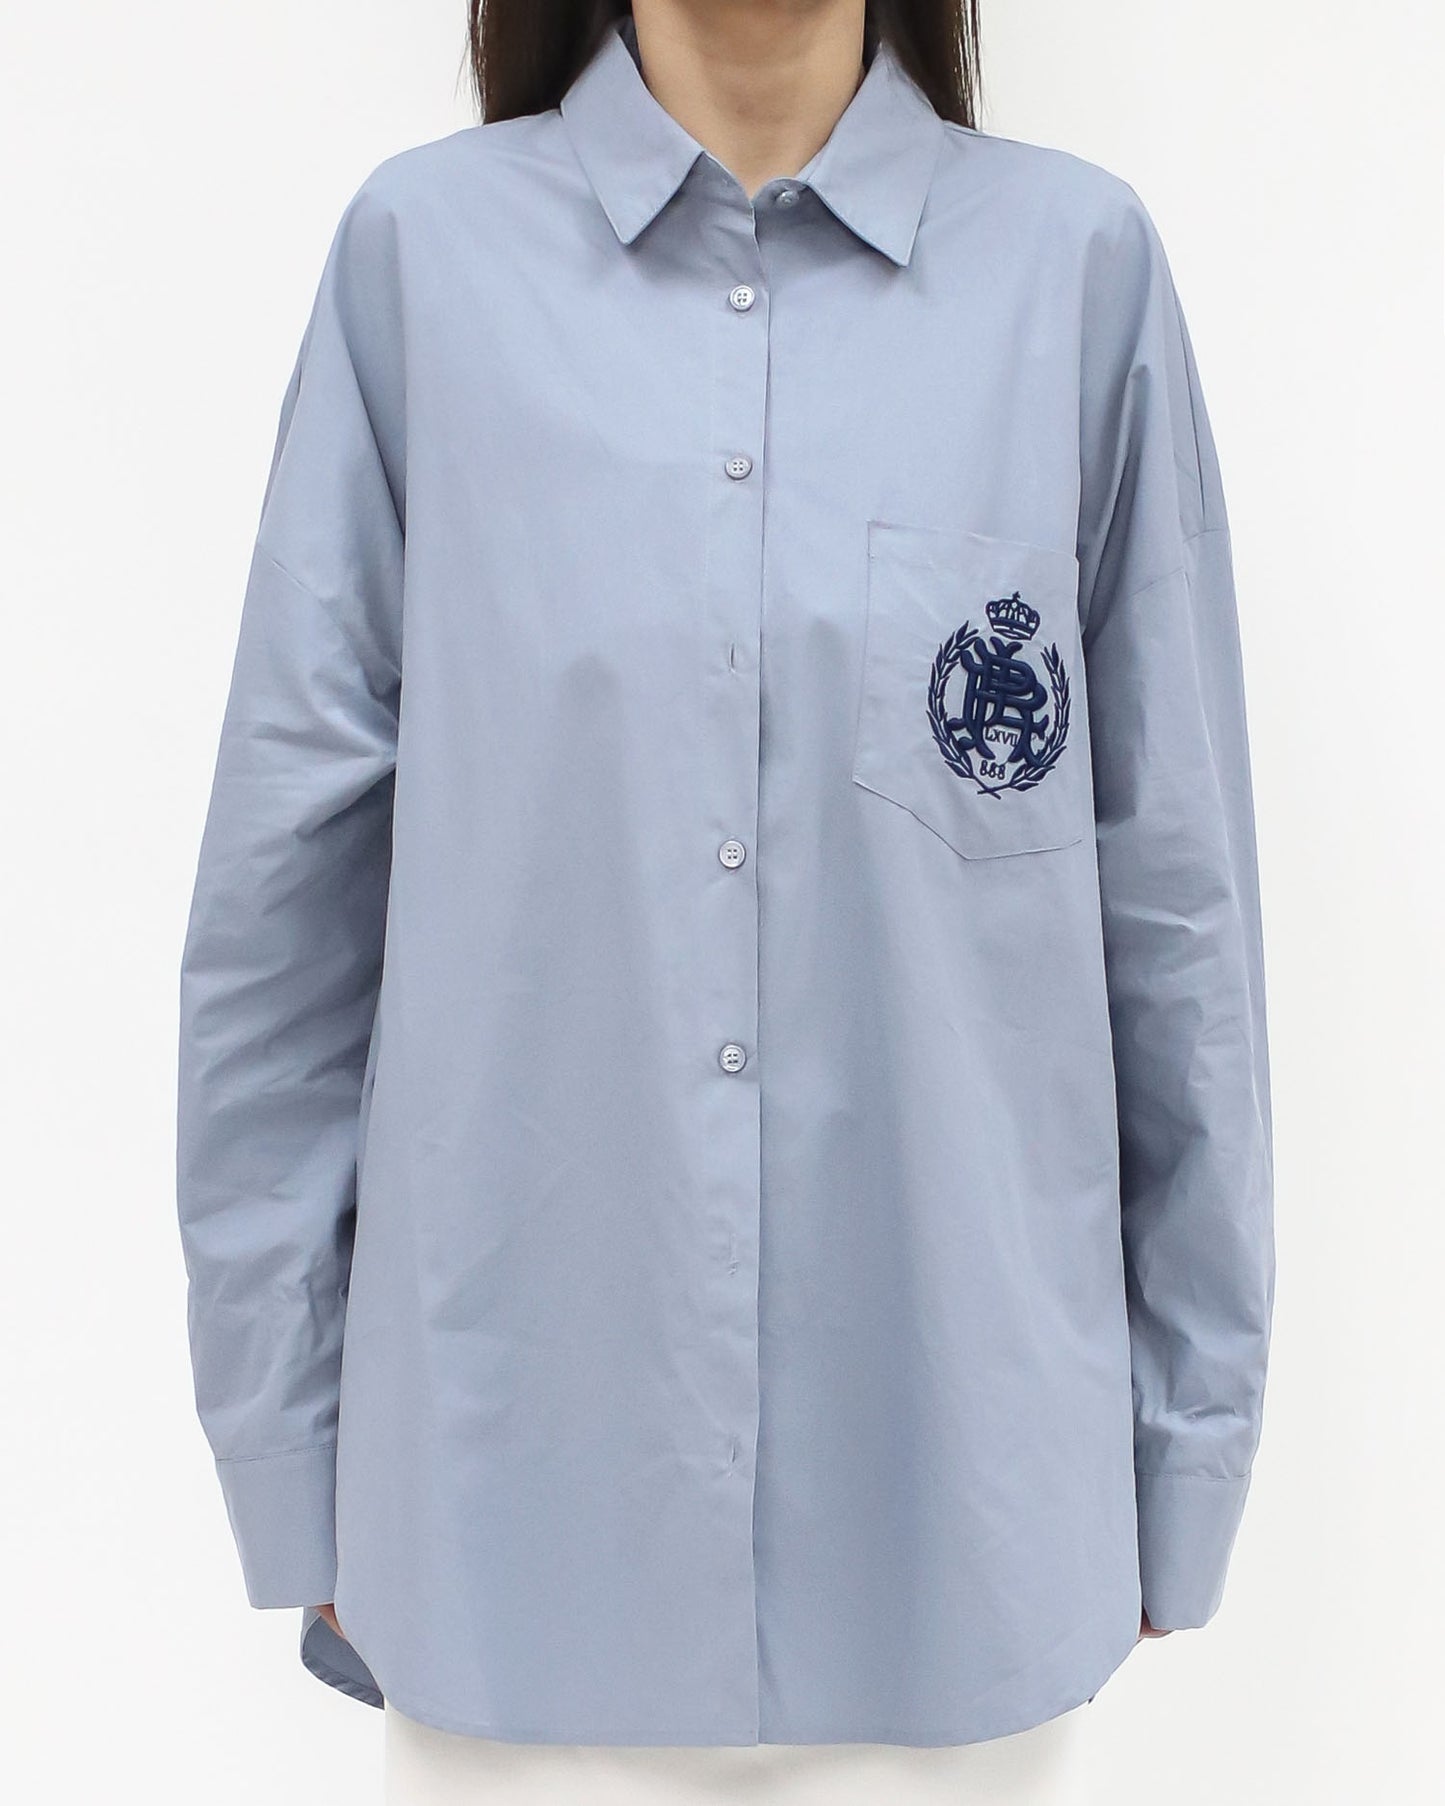 blue embroidered pocket shirt